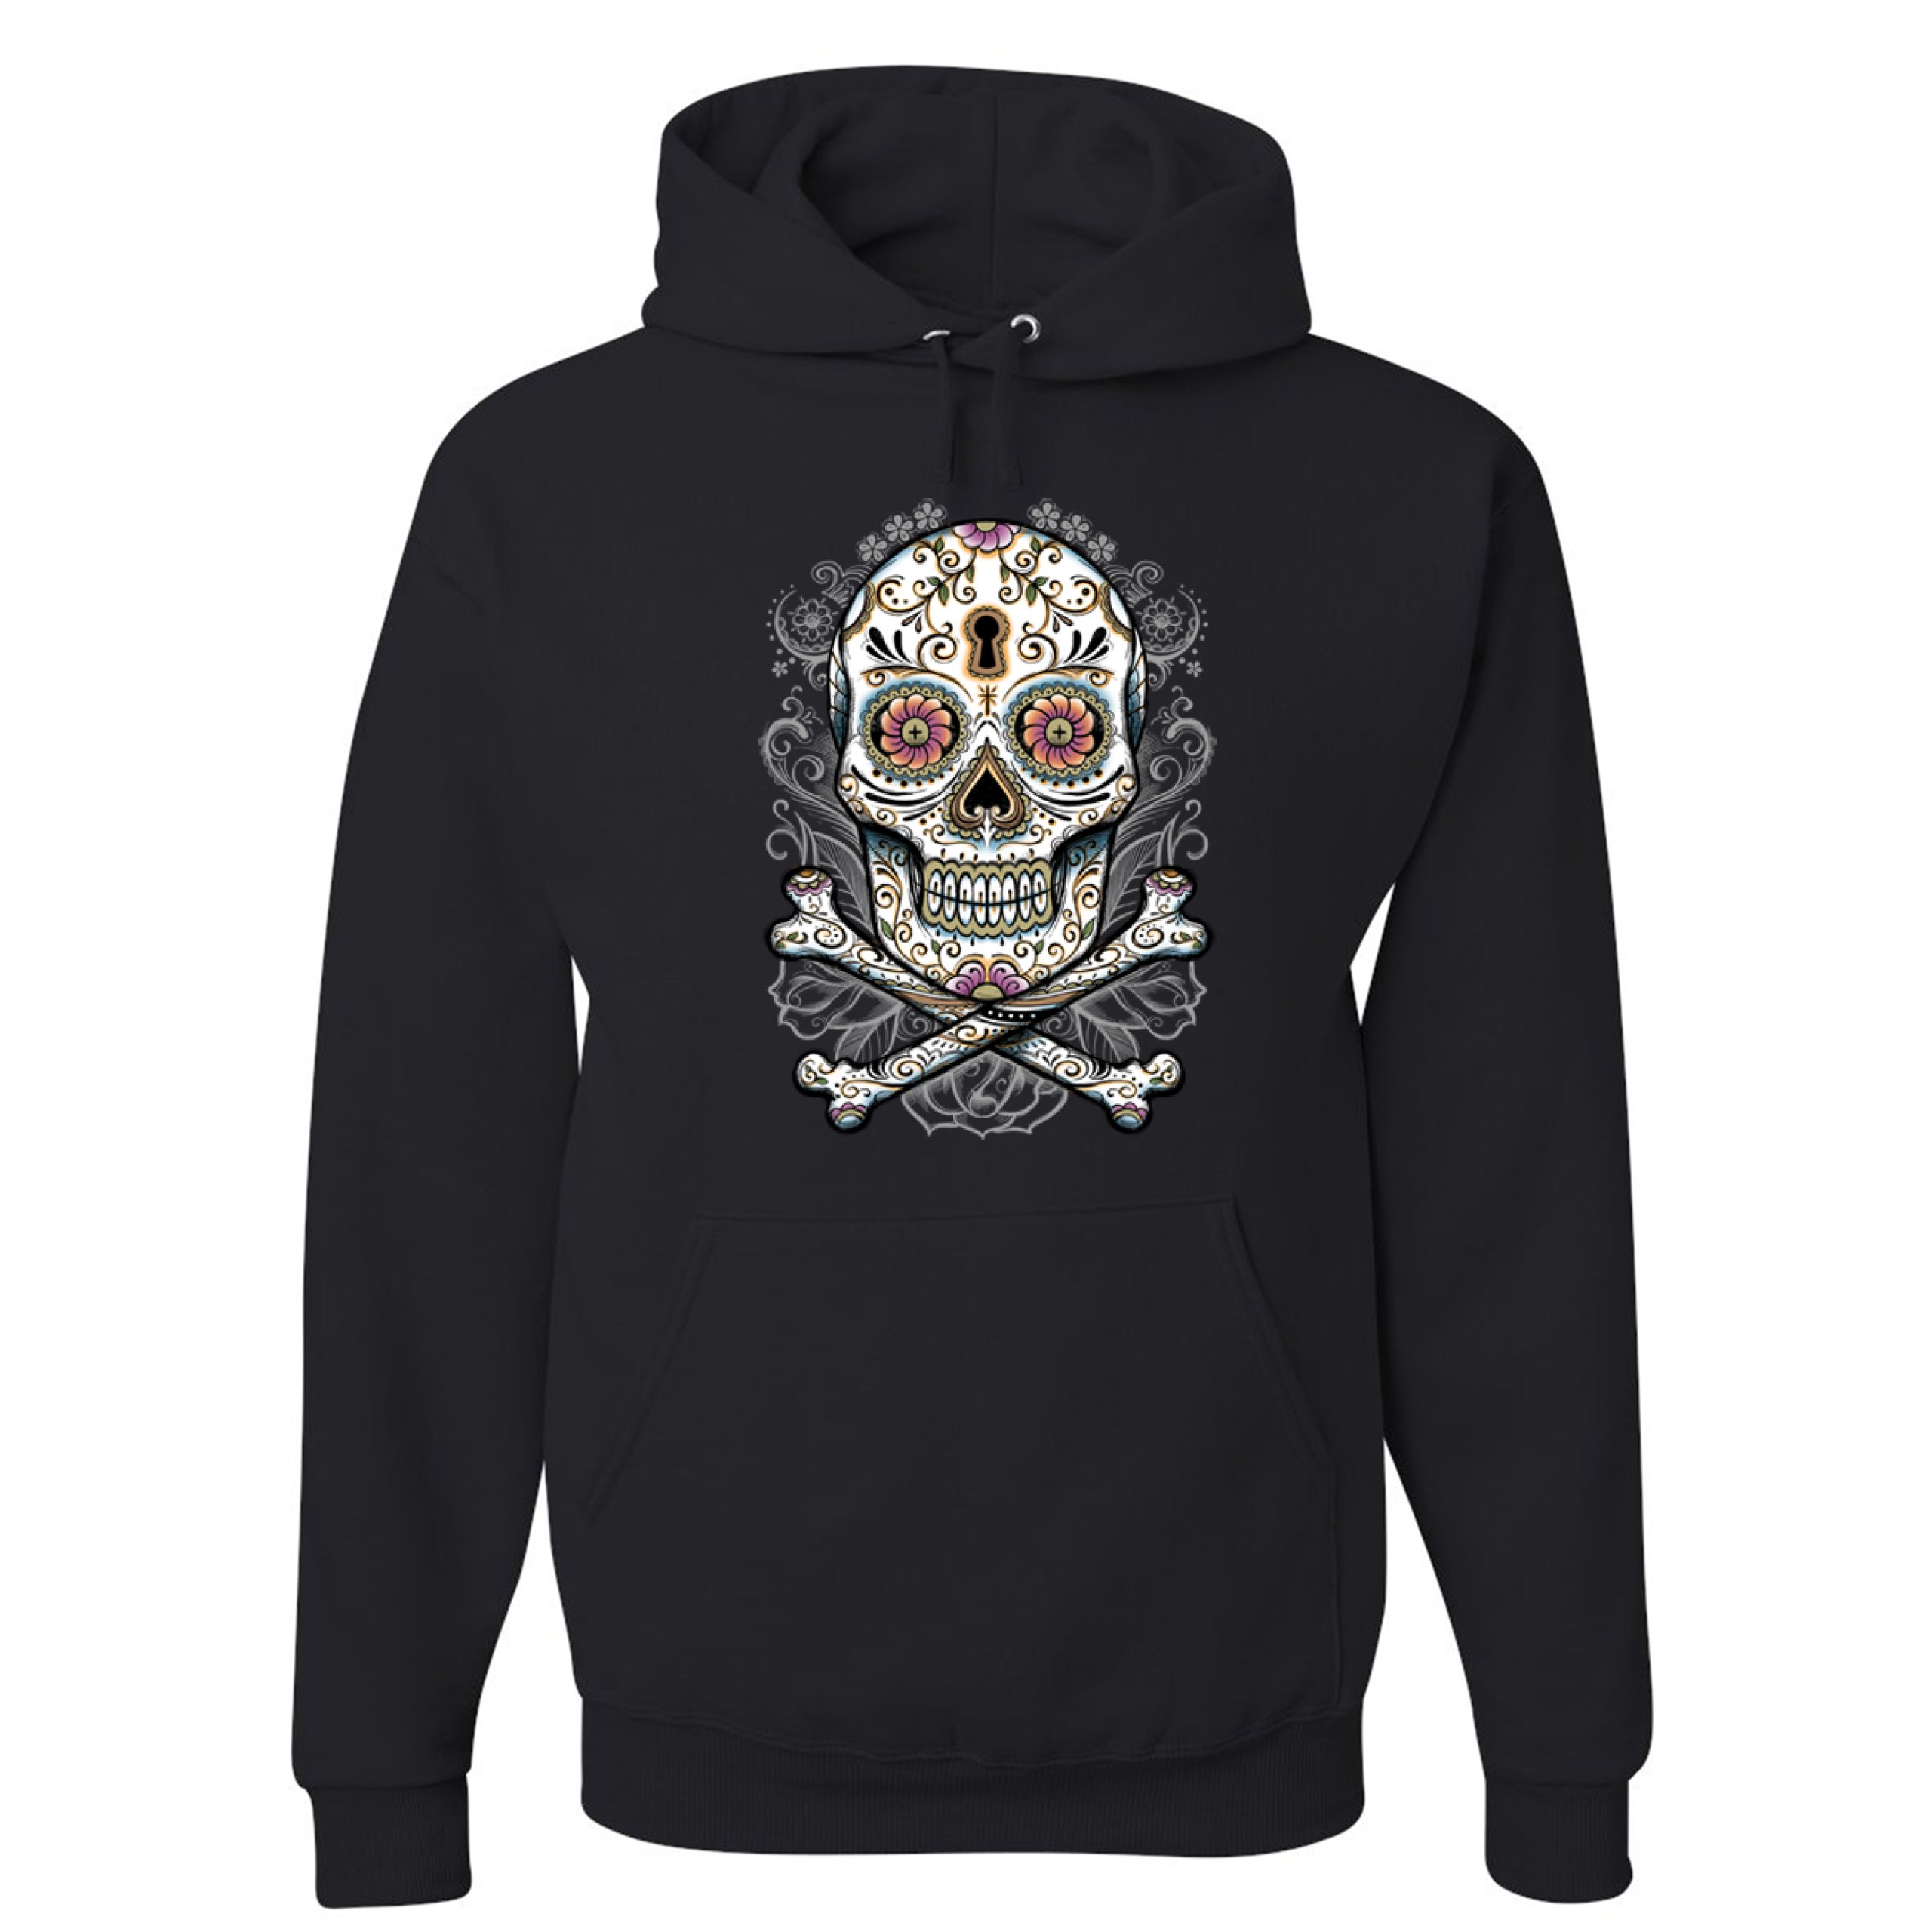 calavera-sugar-skull-sweatshirt-mexican-day-of-the-dead-dia-de-muertos